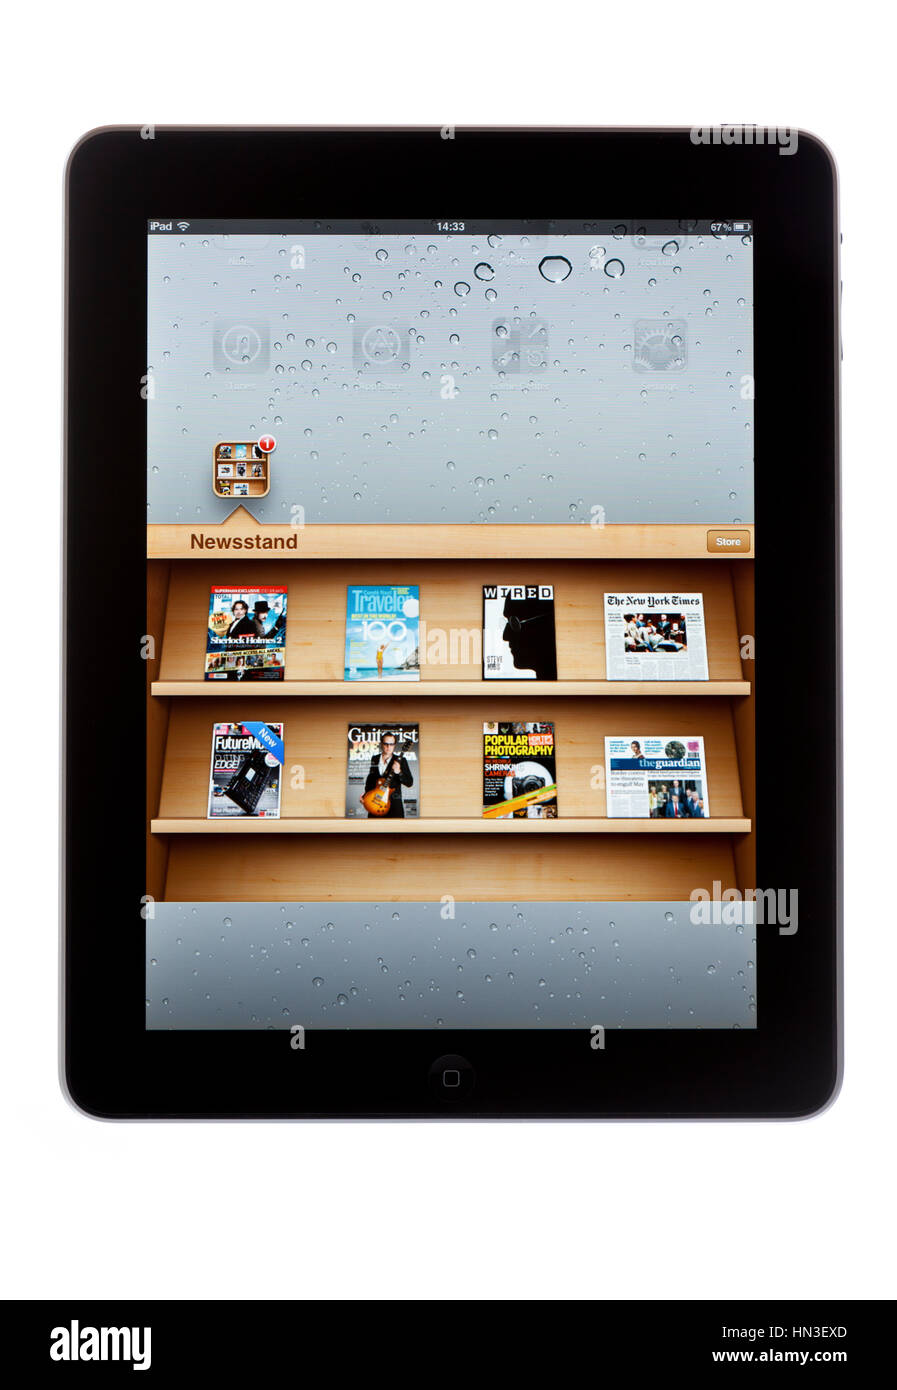 BATH, Großbritannien - 8. November 2011: An Apple iPad Kiosk-Anwendung auf einem weißen Hintergrund angezeigt. Kiosk ermöglicht es Benutzern, iPad herunterladen Ed Stockfoto